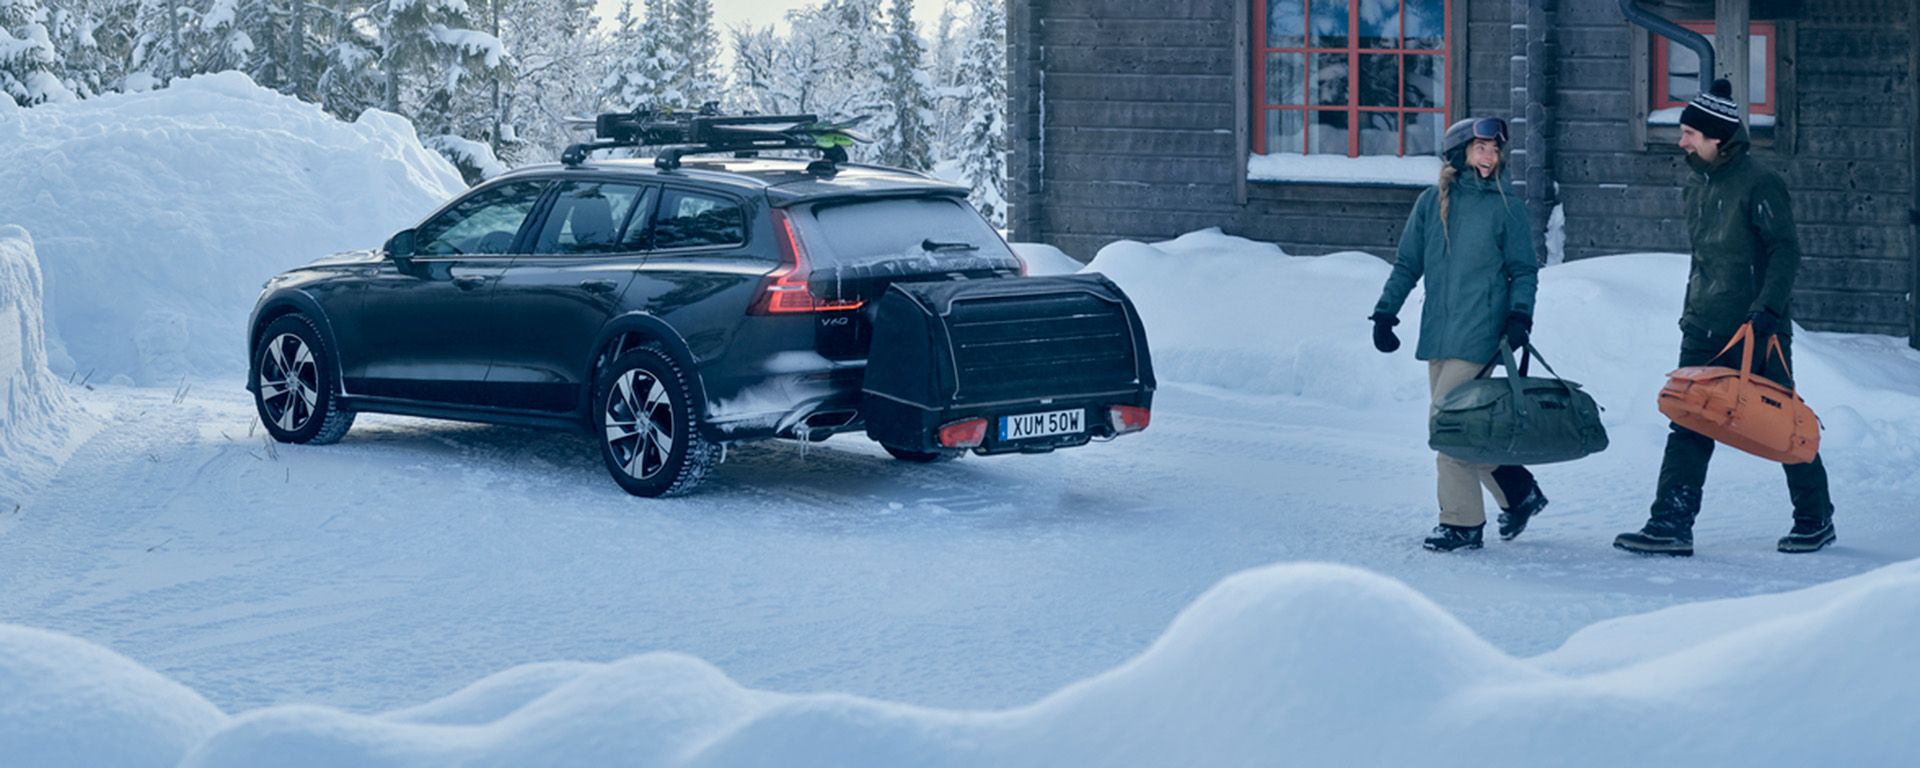 Припаркованный в снегу у коттеджа автомобиль с багажником с креплением сзади Thule Onto и креплением для лыж.